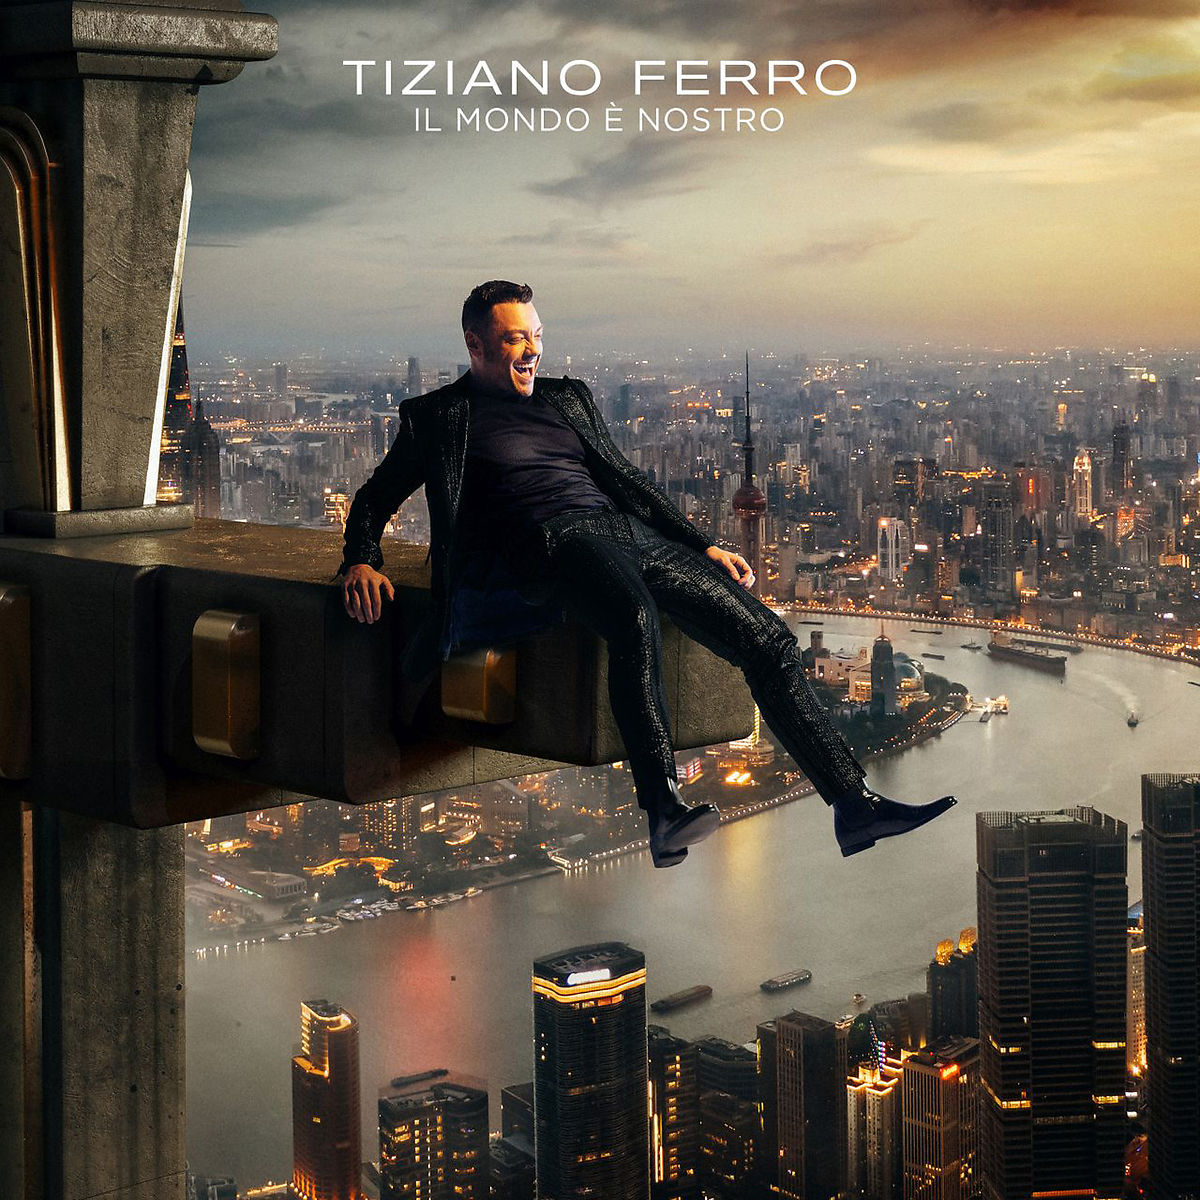 Tiziano Ferro & Sting — For Her Love (Sempre Amata) cover artwork